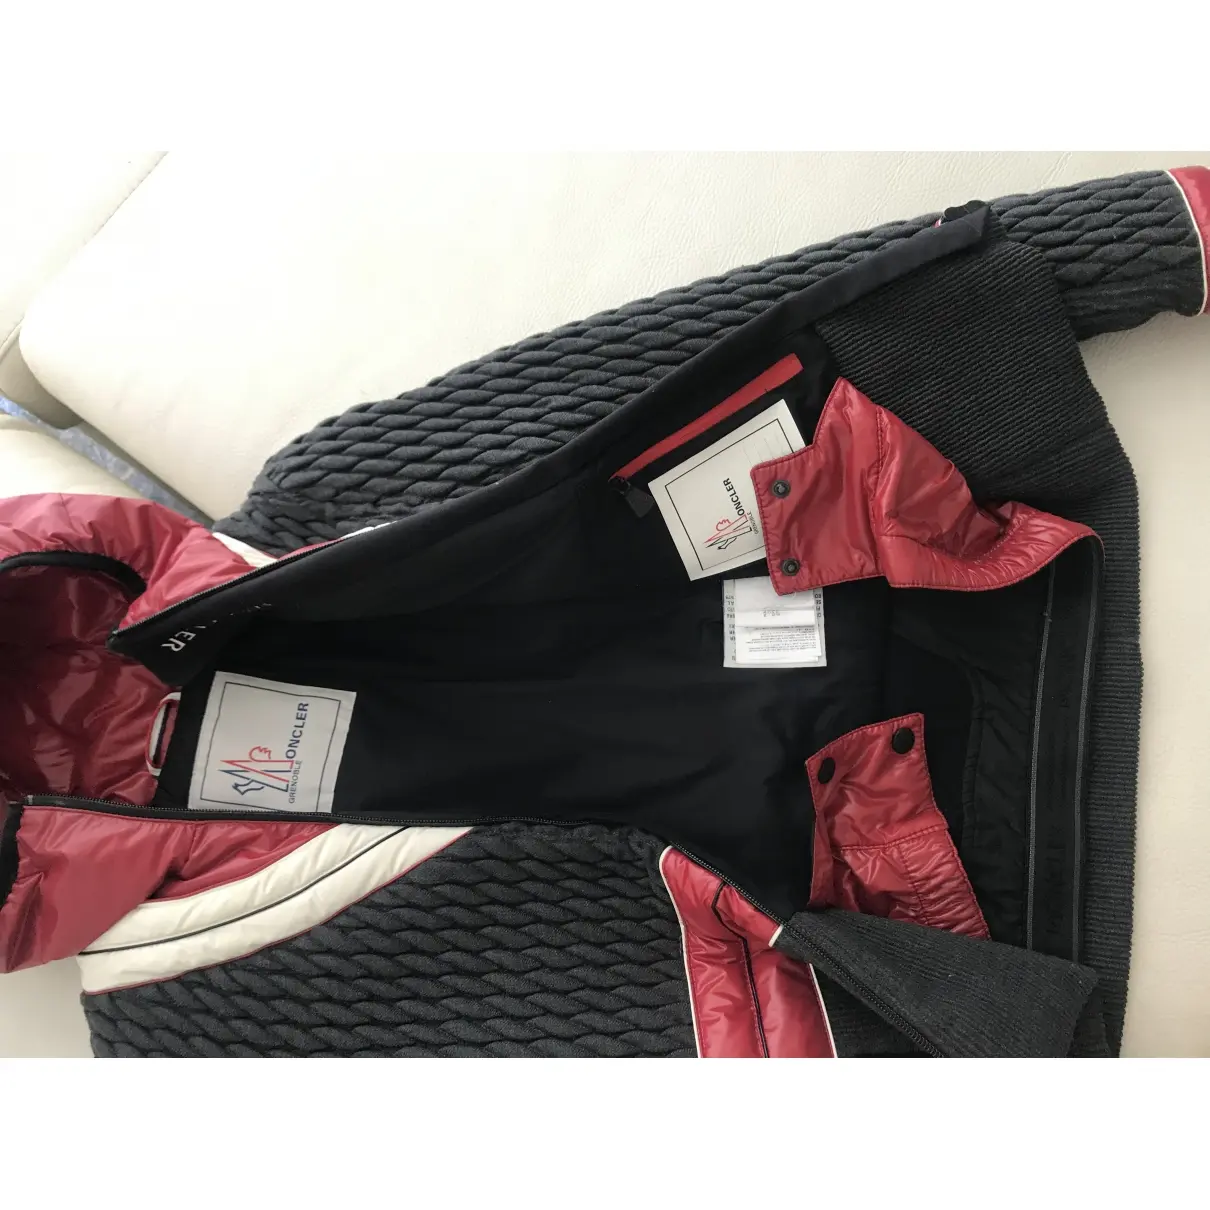 Buy Moncler Grenoble jacket online